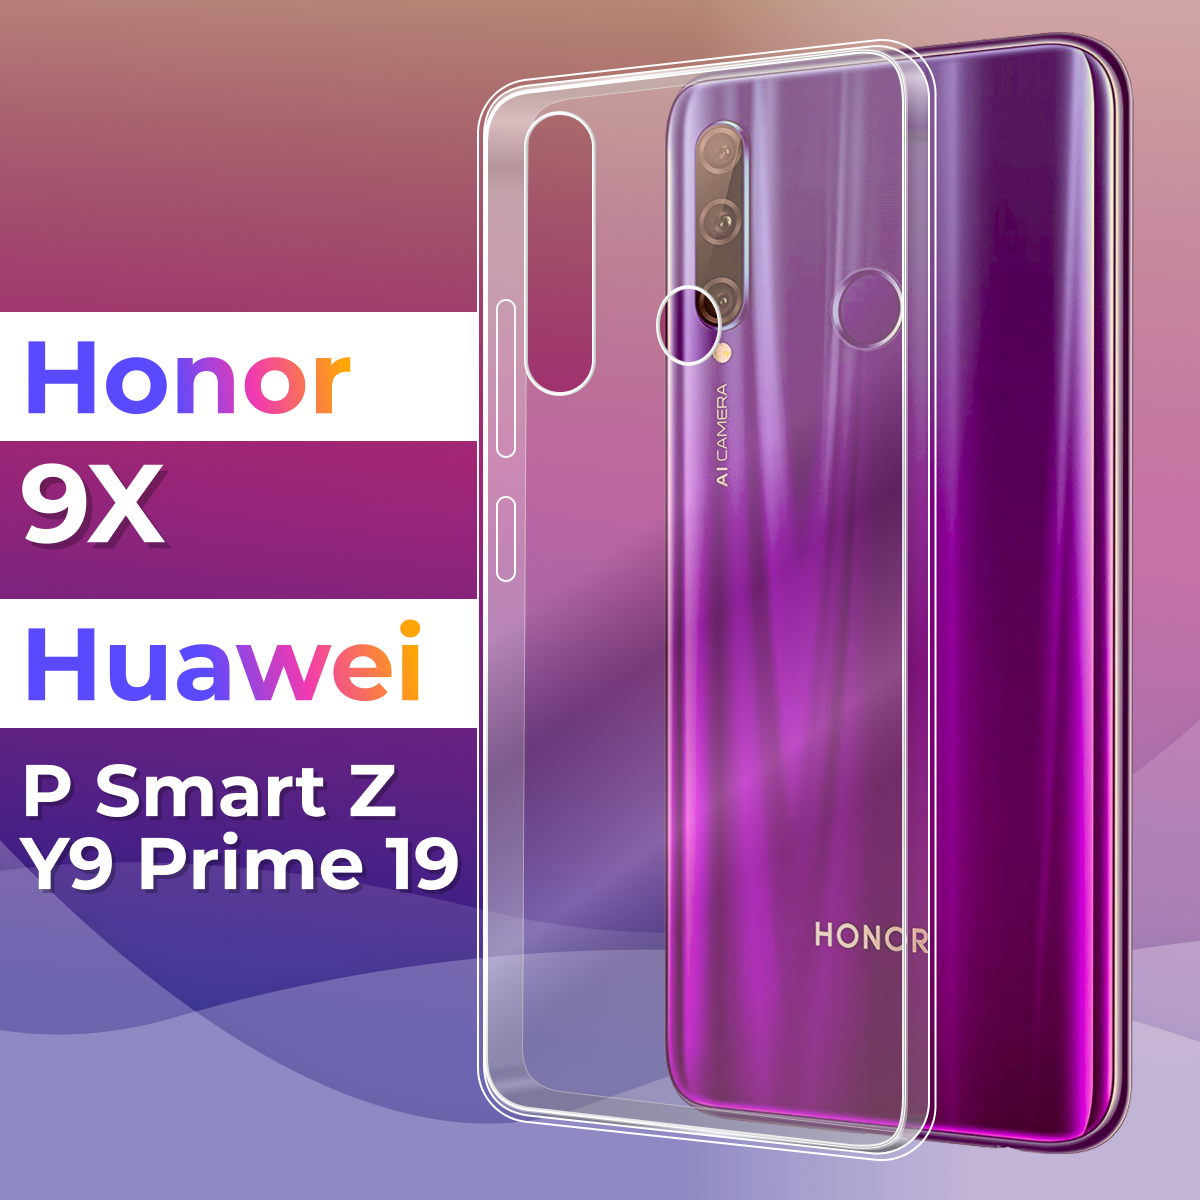 Тонкий силиконовый чехол для смартфона Honor 9X, P Smart Z, Y9 Prime 2019 / Чехол для телефона Хонор 9 Икс, Пи Смарт Зет, Ю9 Прайм 2019 (Прозрачный)